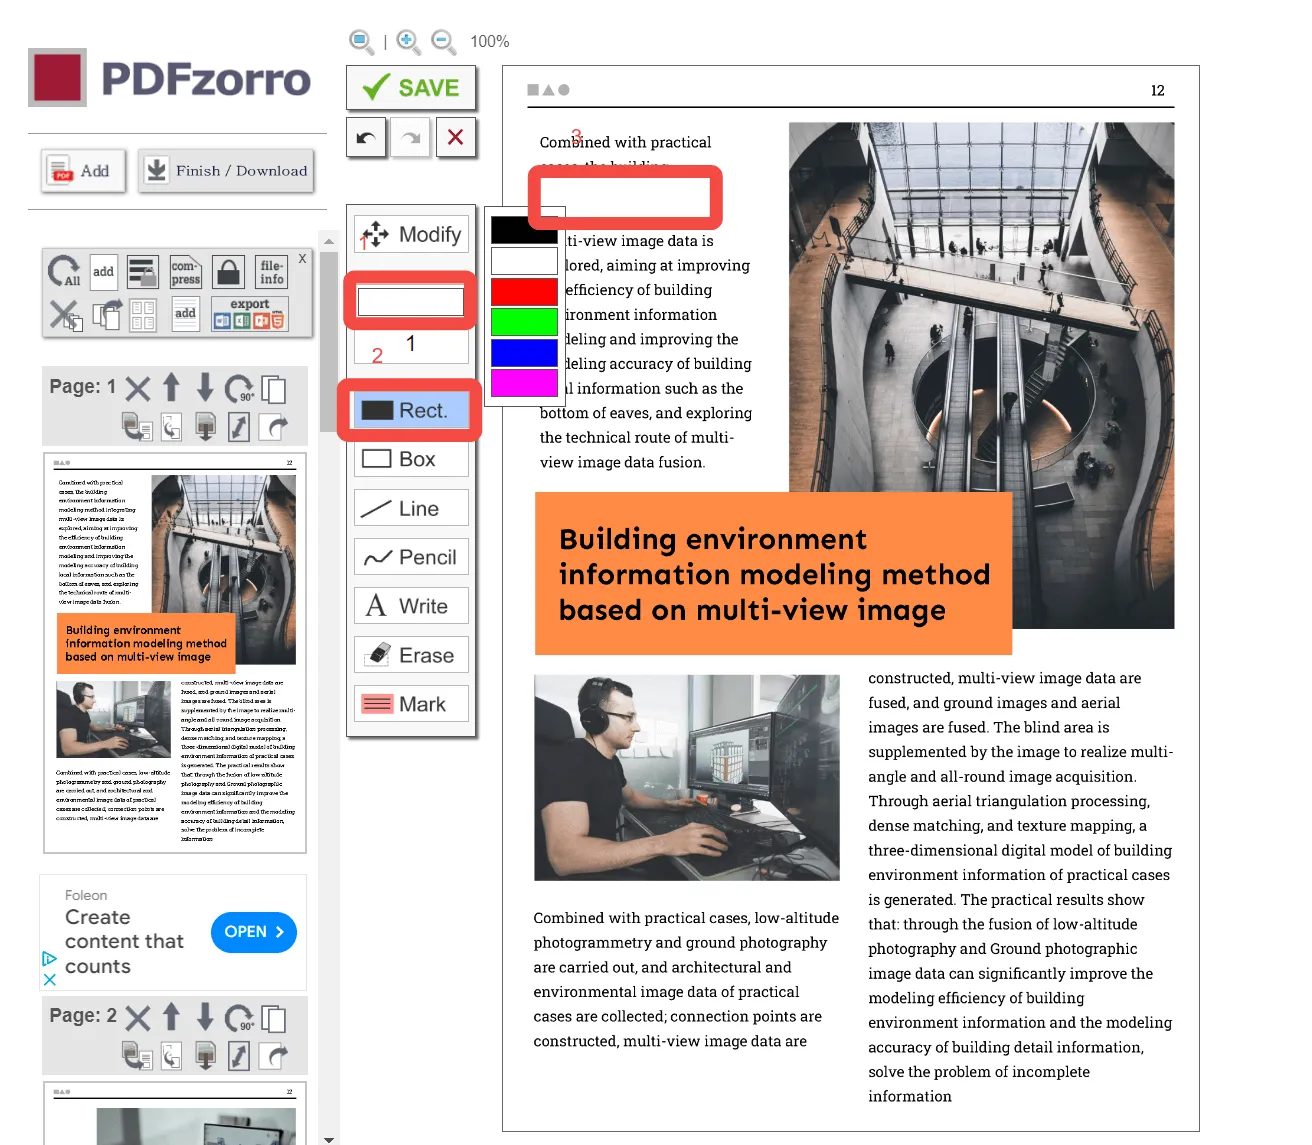 whiteout PDF online with PDFzorro